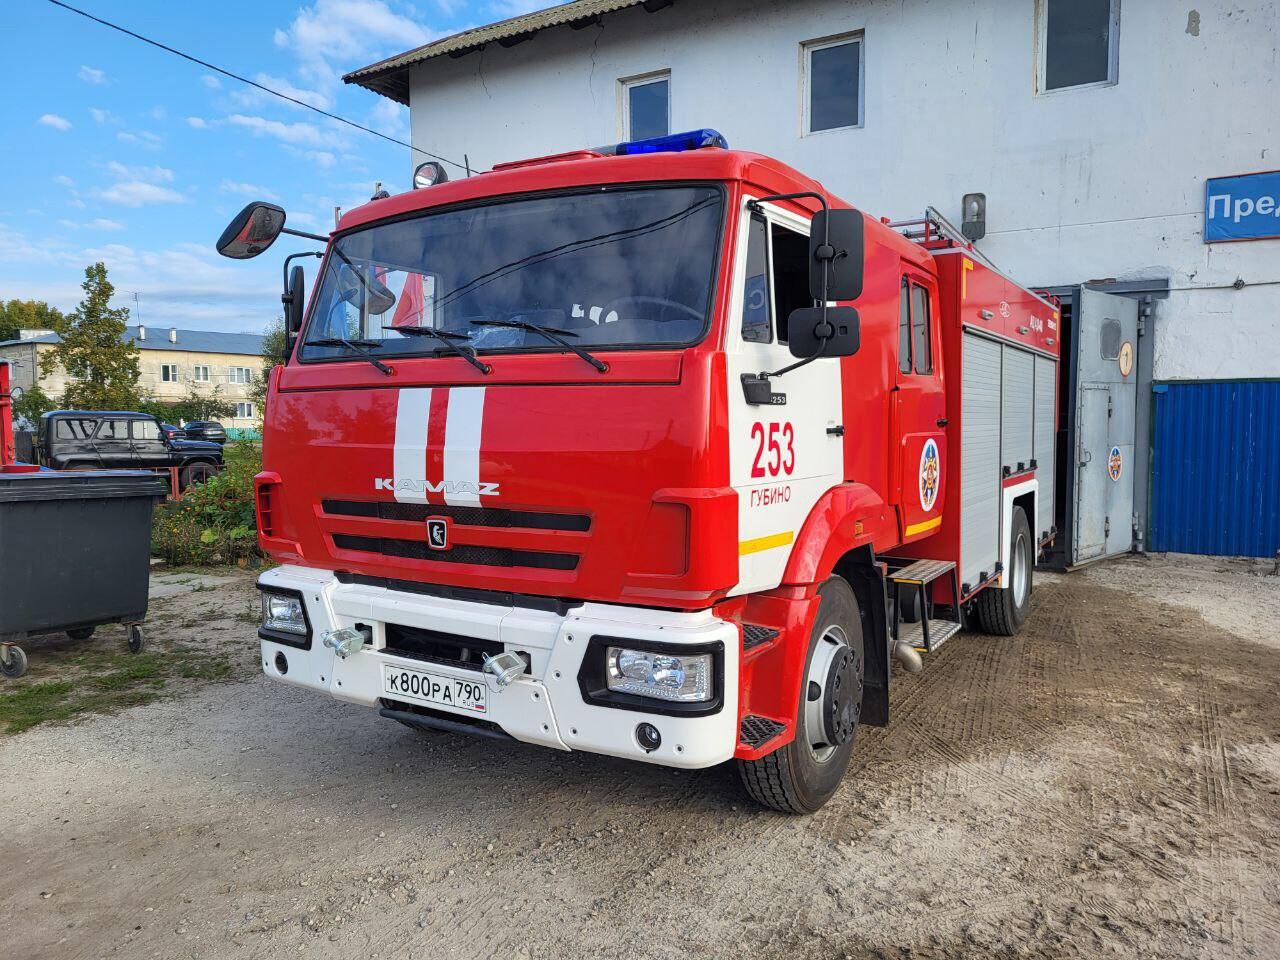 Новый пожарный автомобиль заступил на боевое дежурство в деревне Губино